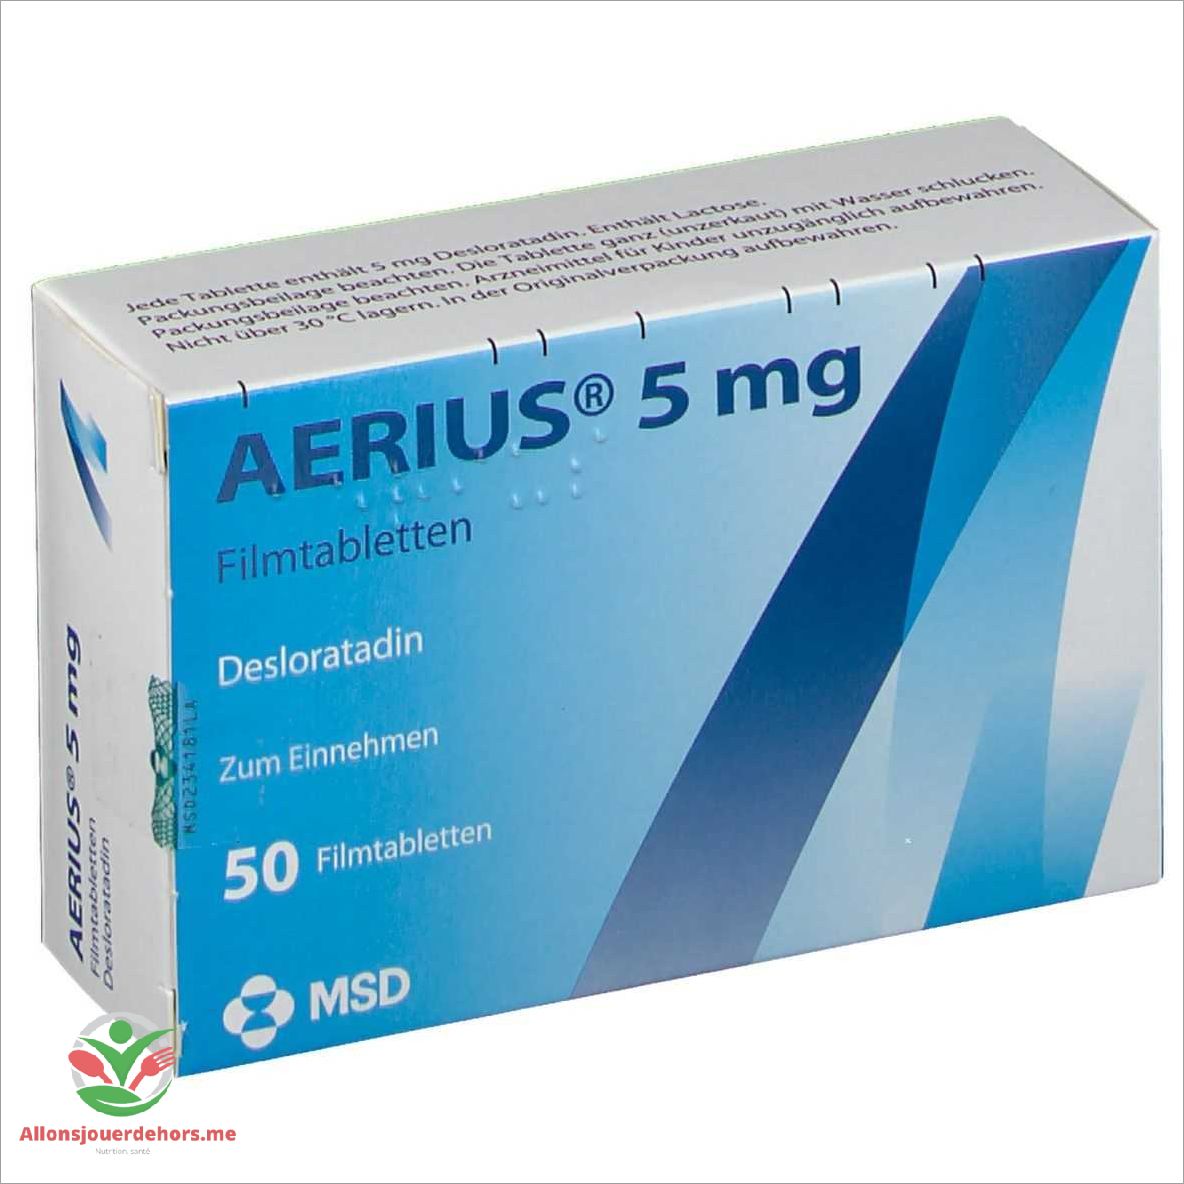 Aerius 5 mg: Fonctionnement et Utilisation